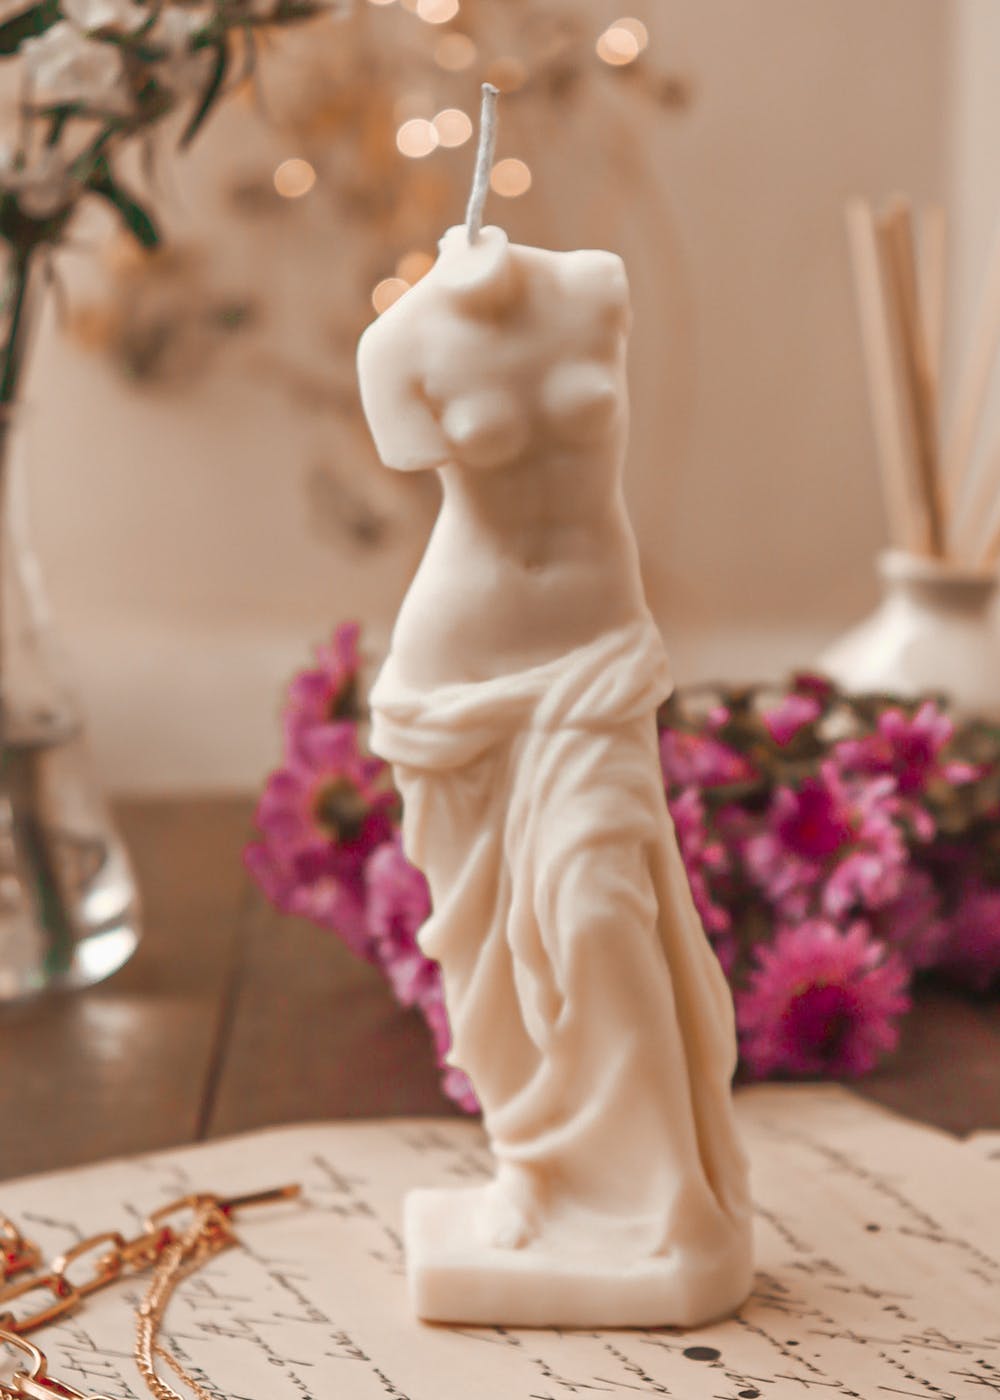 Venus De Milo Sculpture Candle